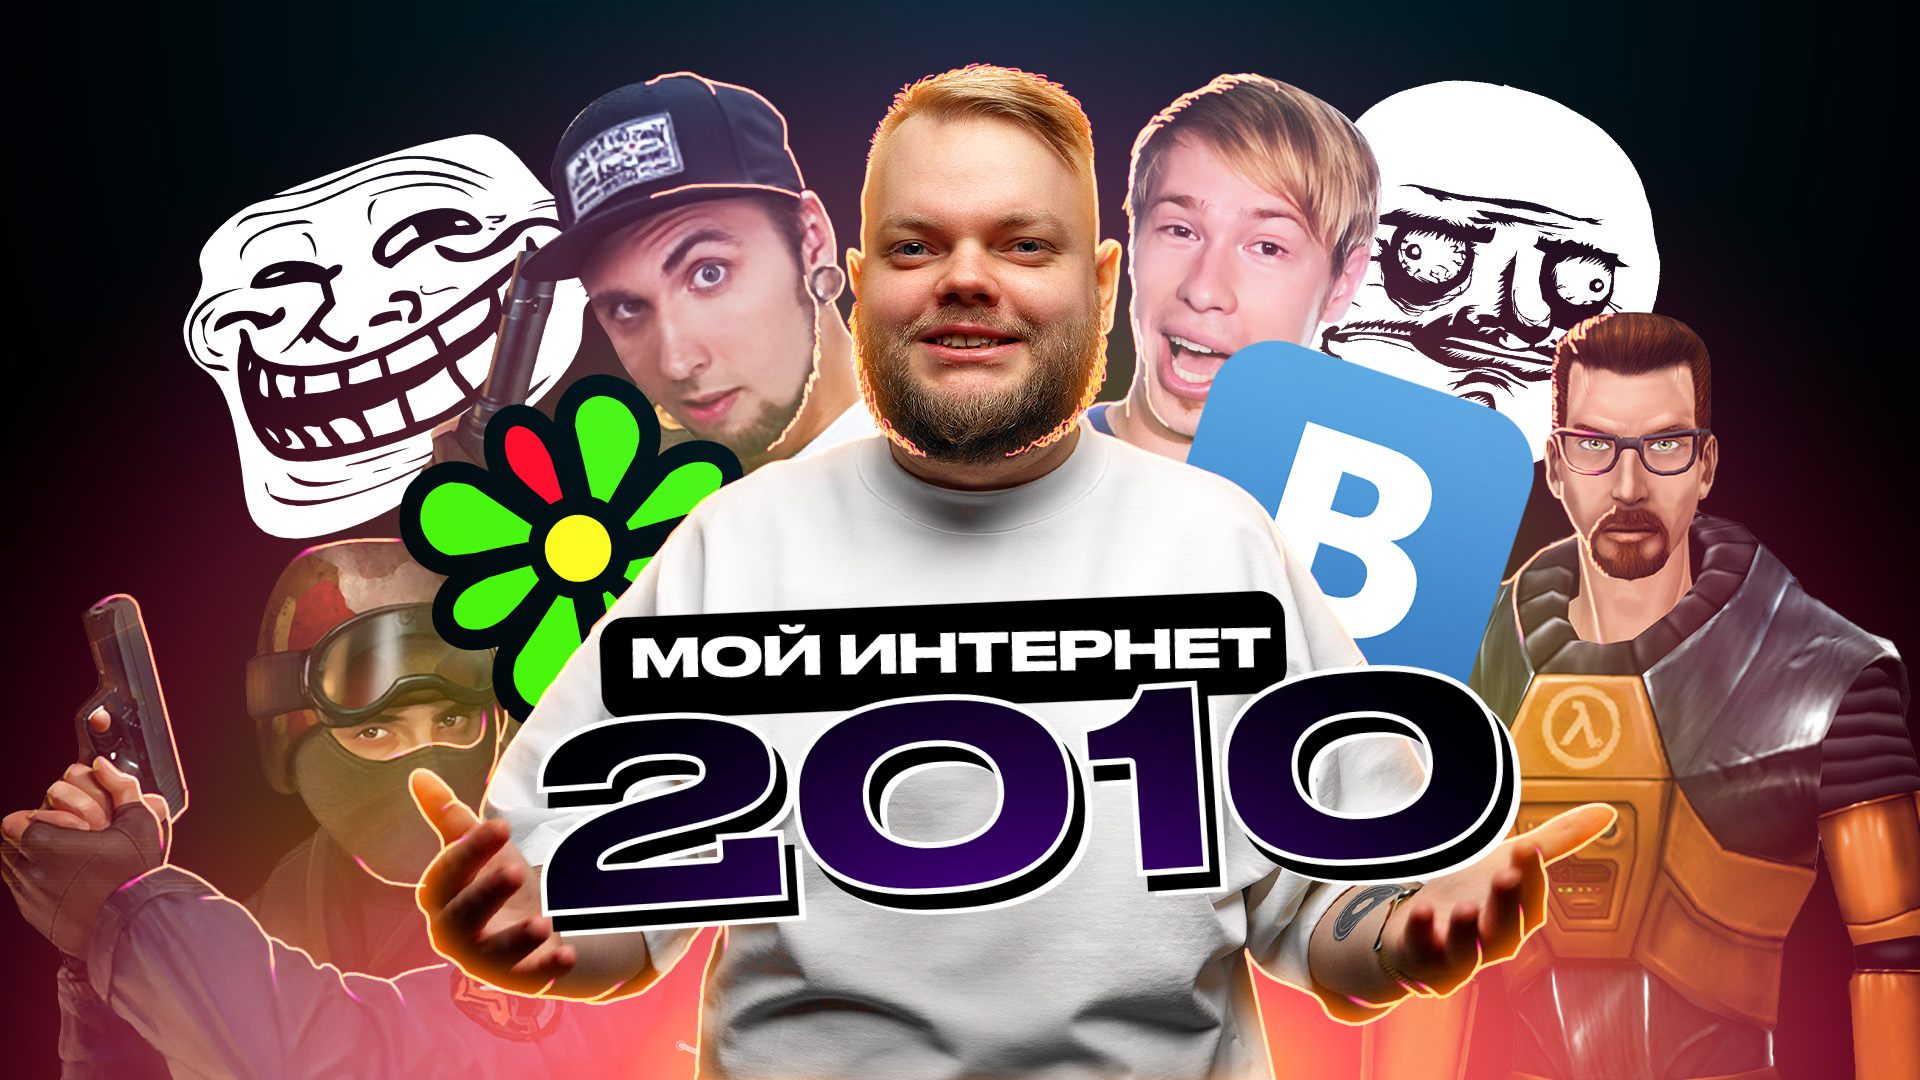 Мой интернет 2010: ICQ, ВКонтакте, игры и flash, мемы!